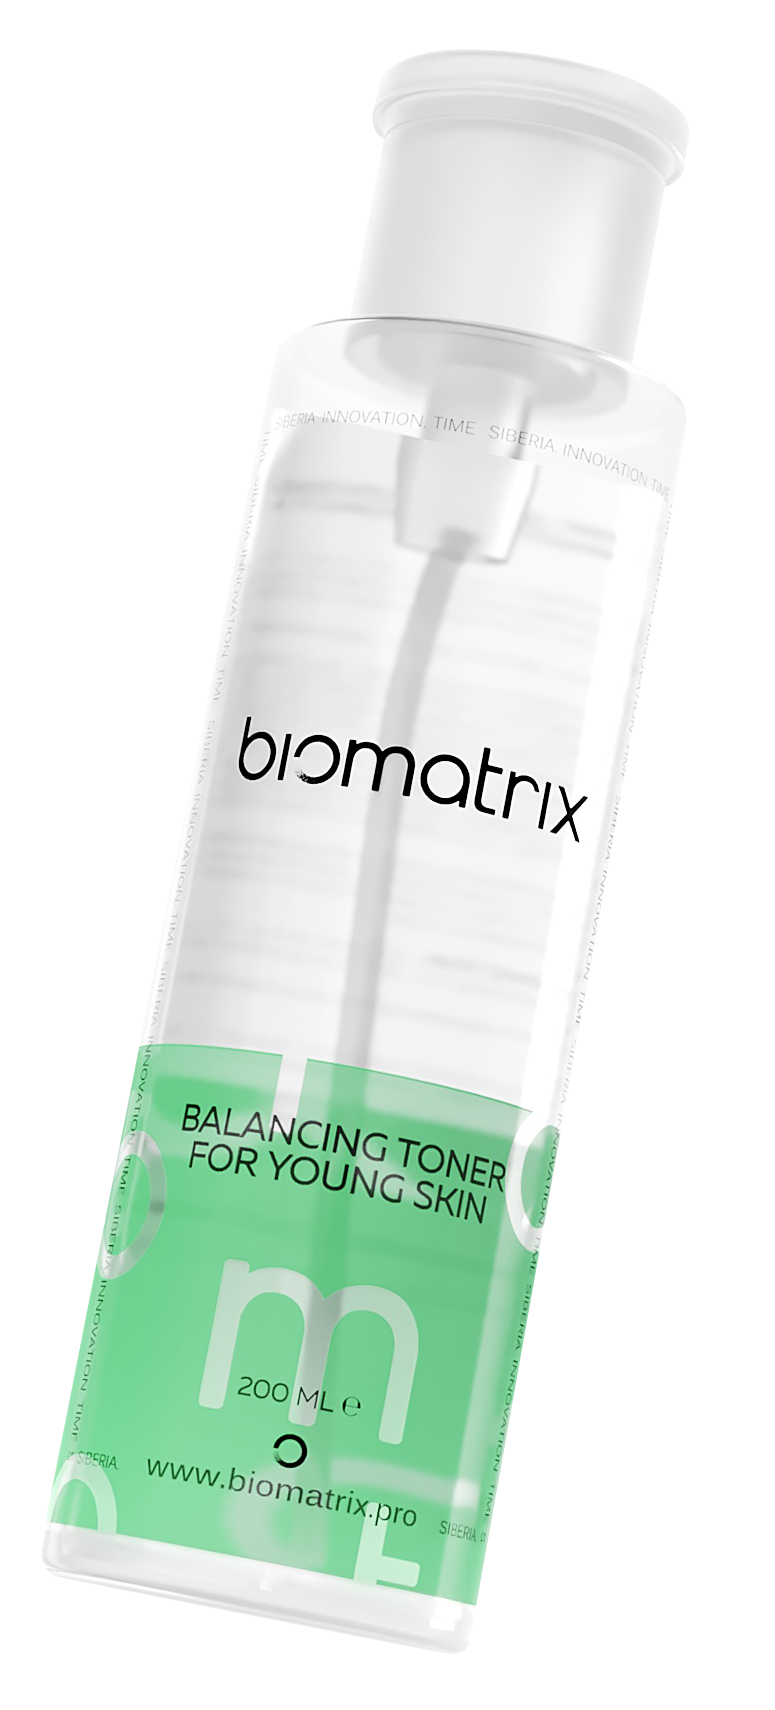 Балансирующий тоник Biomatrix Balancing Toner For Young Skin для молодой кожи, 200 мл, Лосьон, тоник для лица  - Купить